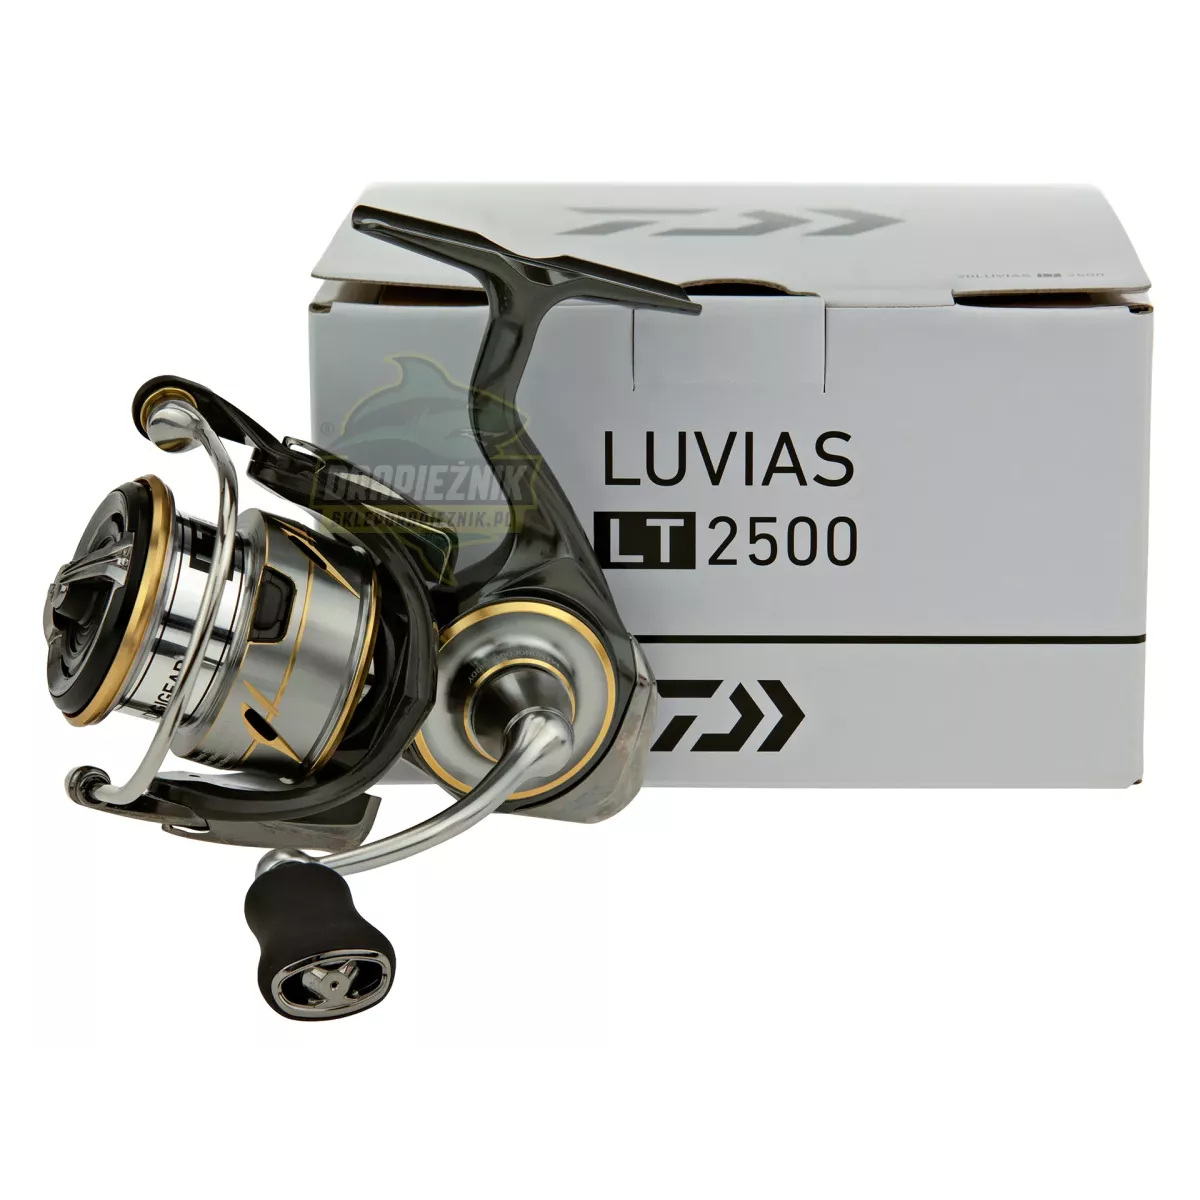 Kołowrotek Daiwa 20 Luvias LT 2500